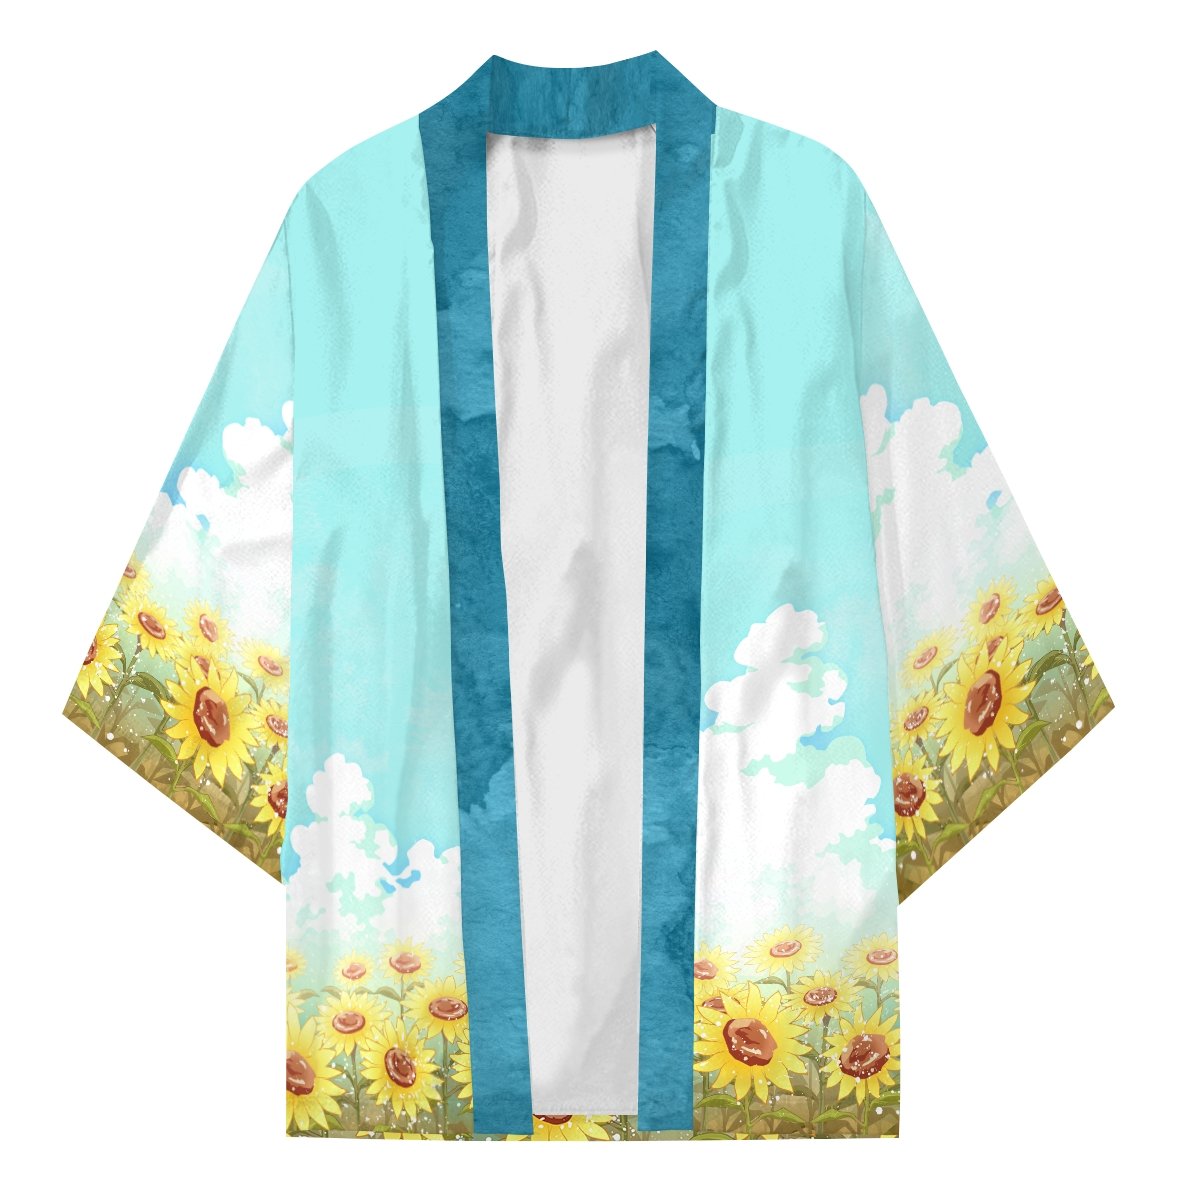 tohru the onigiri kimono 497283 - Otaku Treat